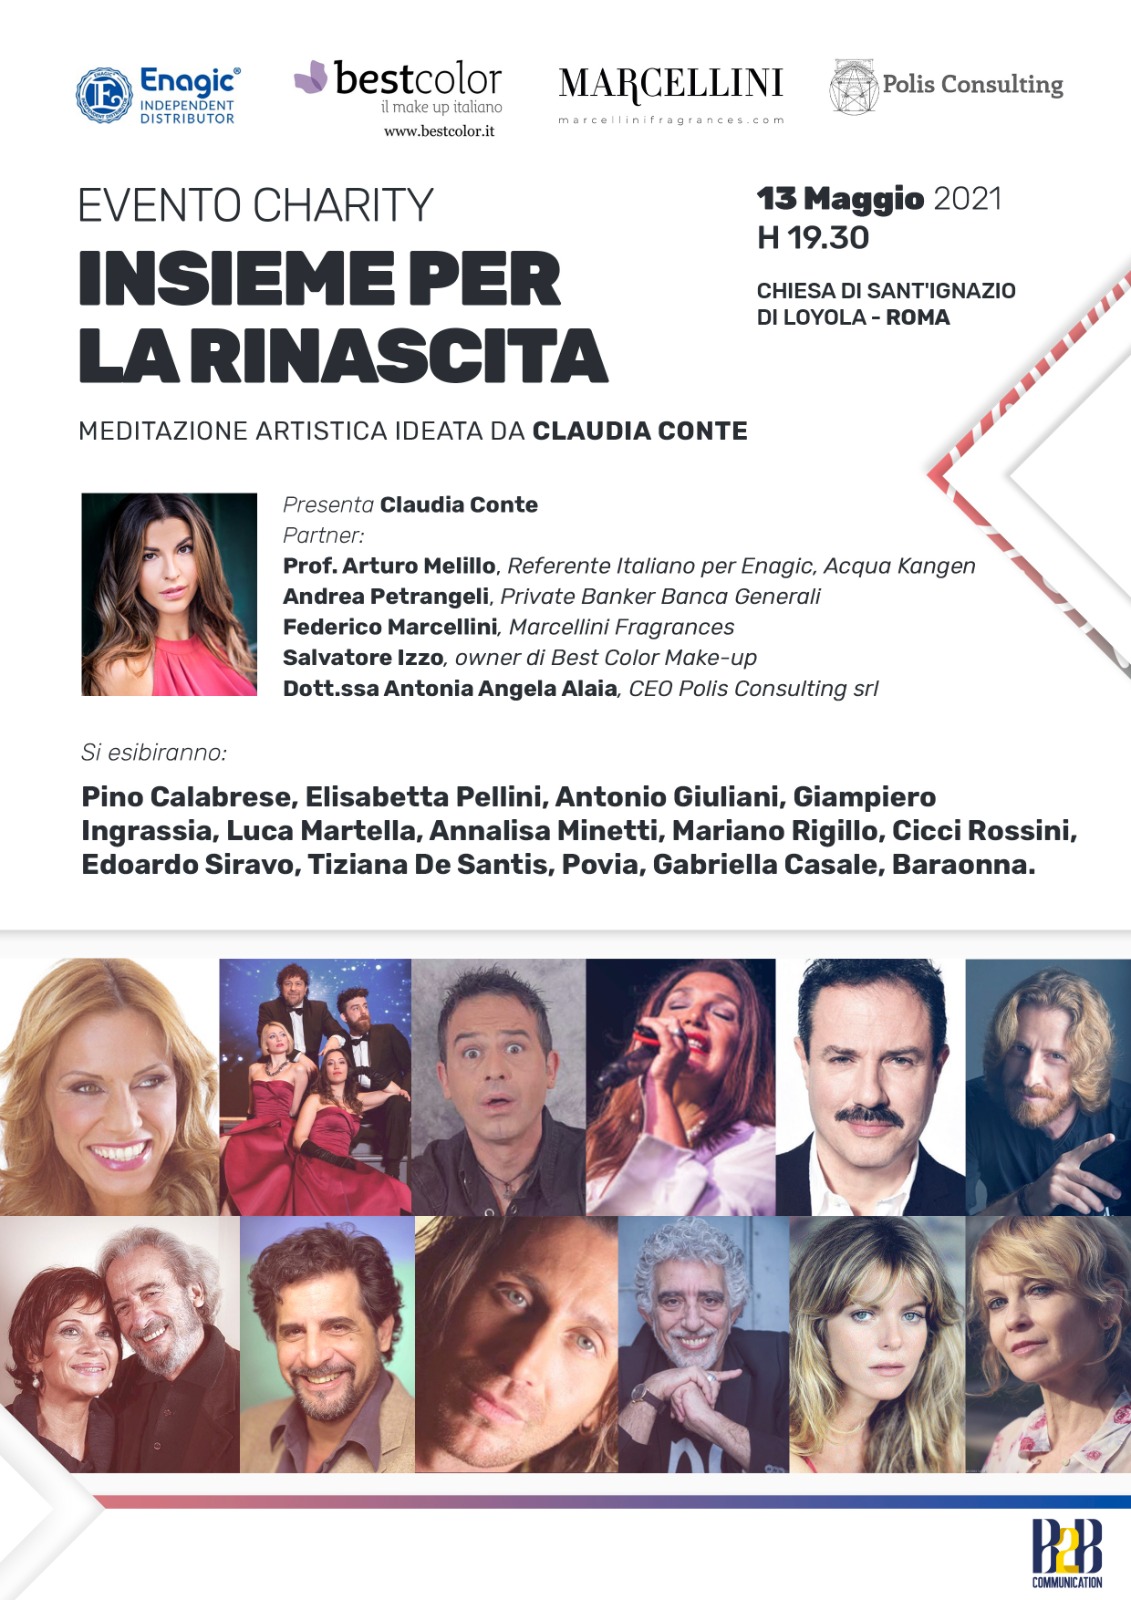 Claudia Conte raduna attori e cantanti per “Insieme per la rinascita”